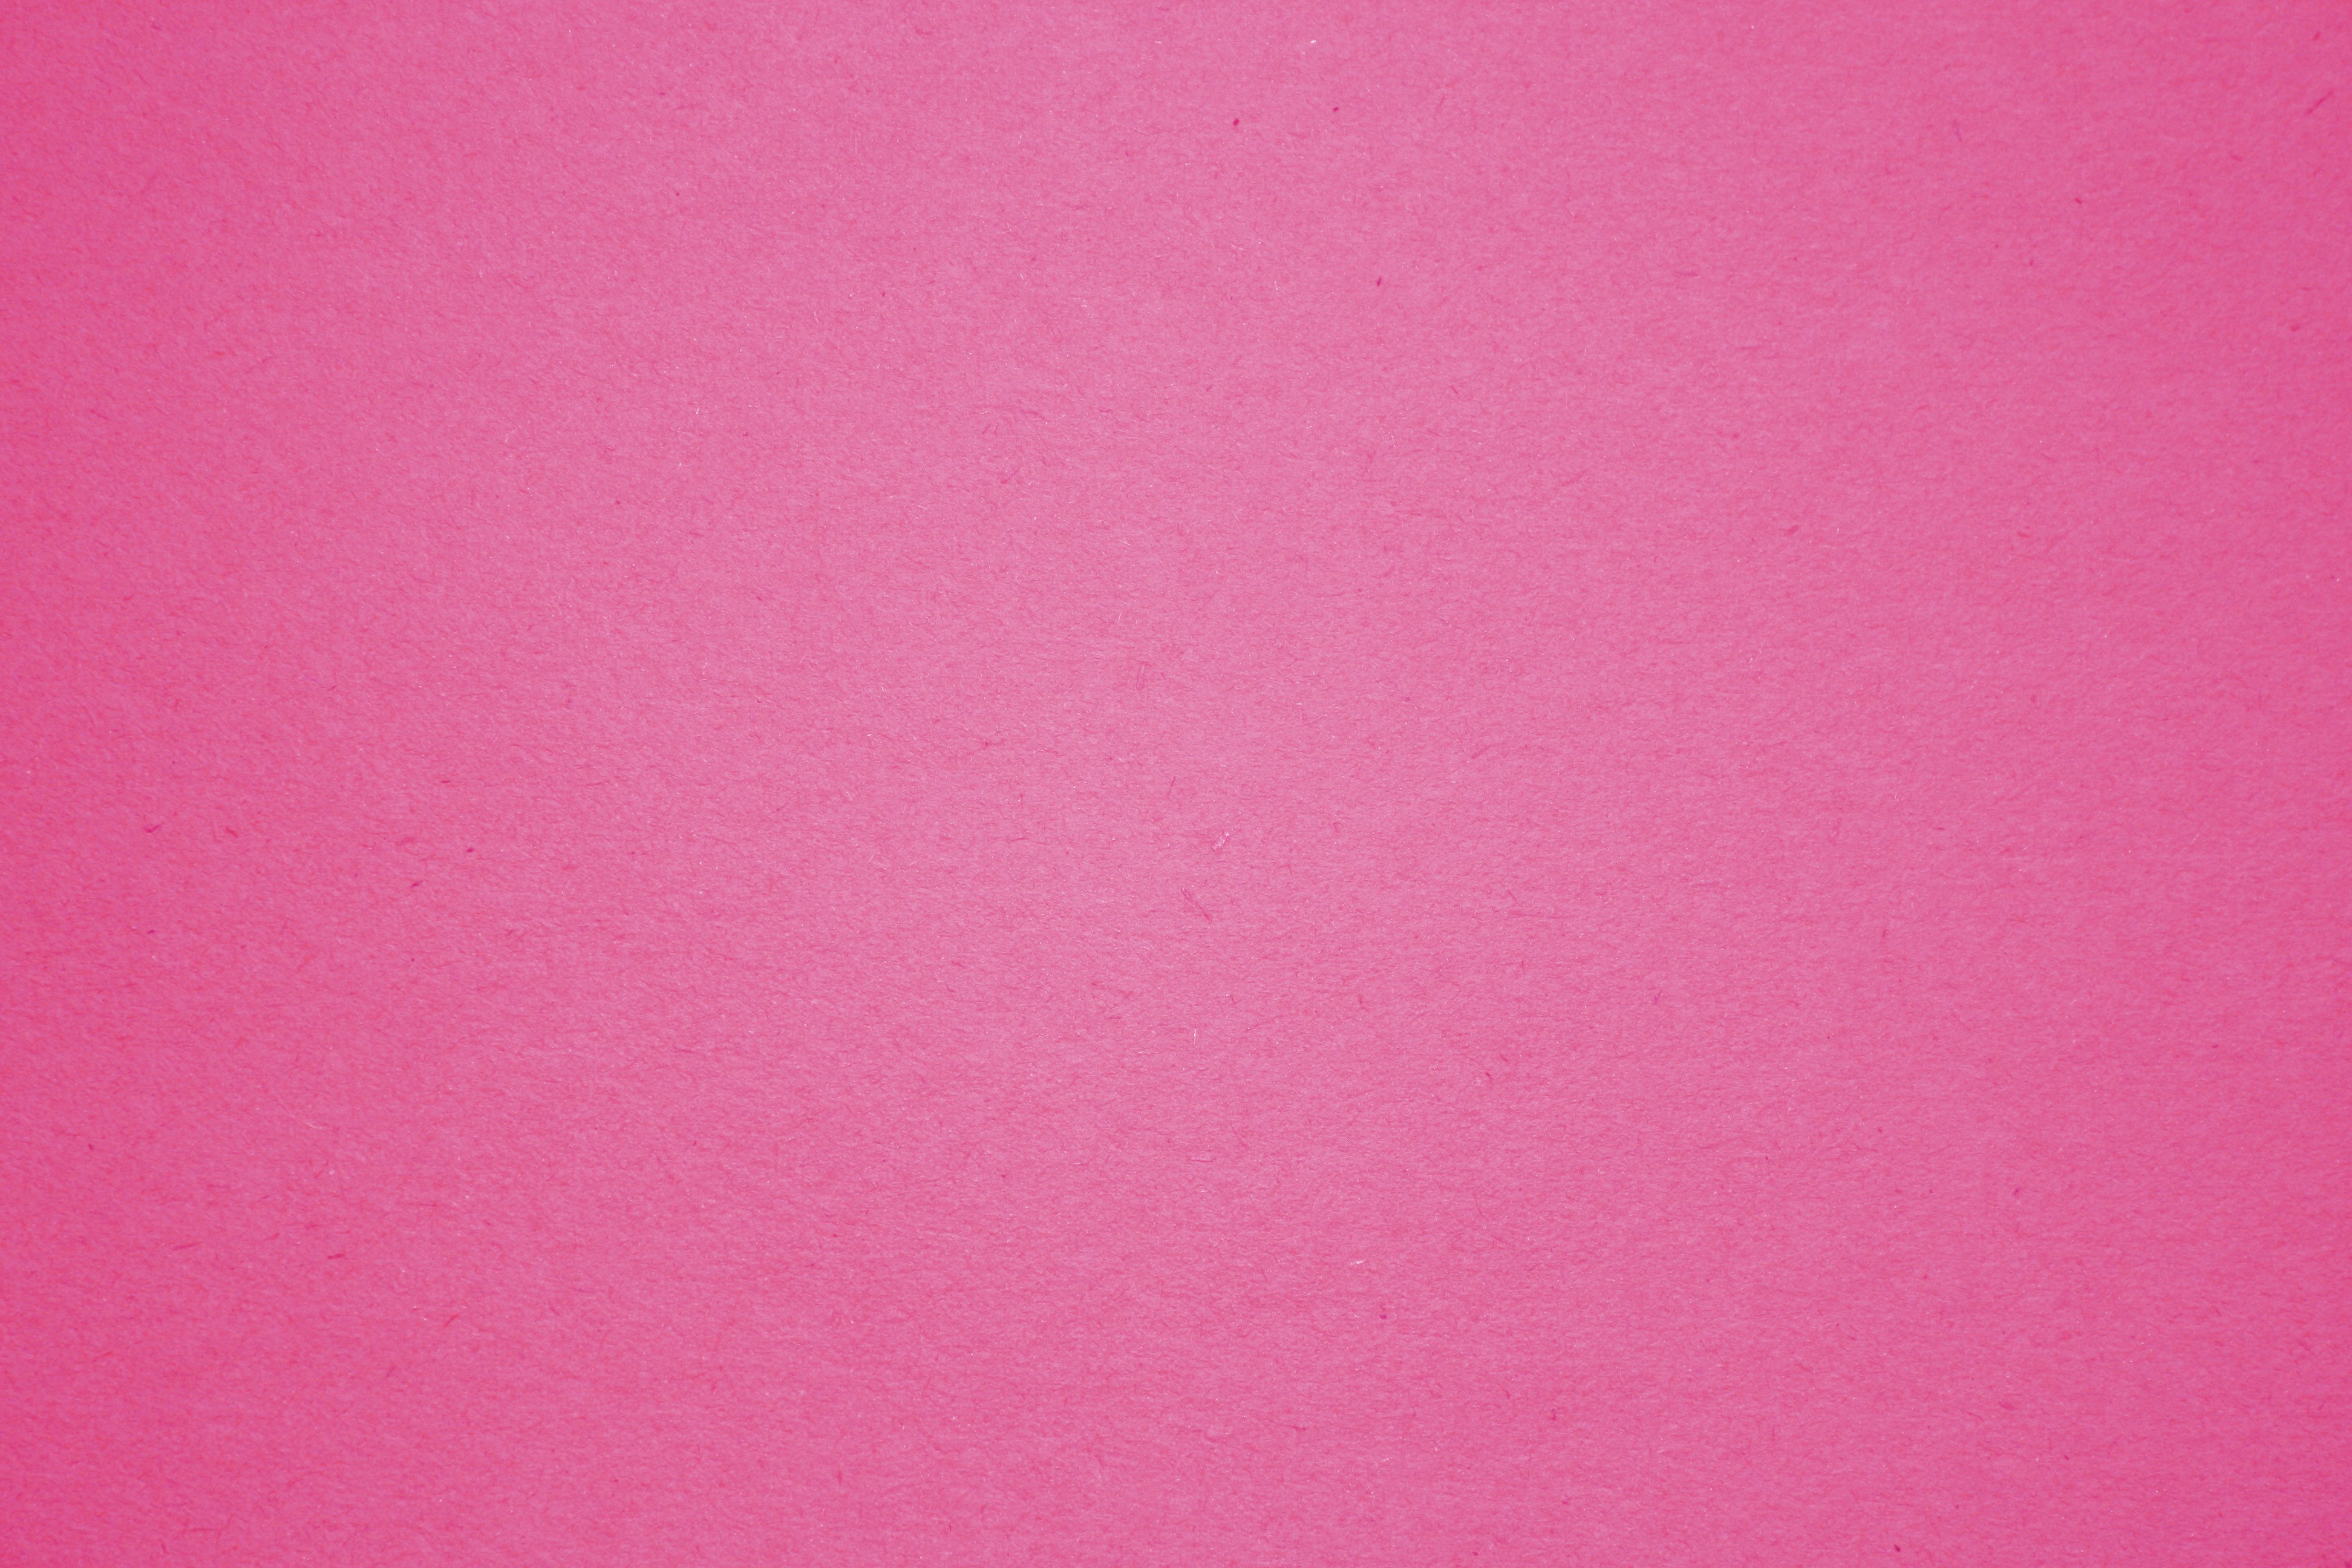 Pink Construction Paper Texture Picture Photograph Photos